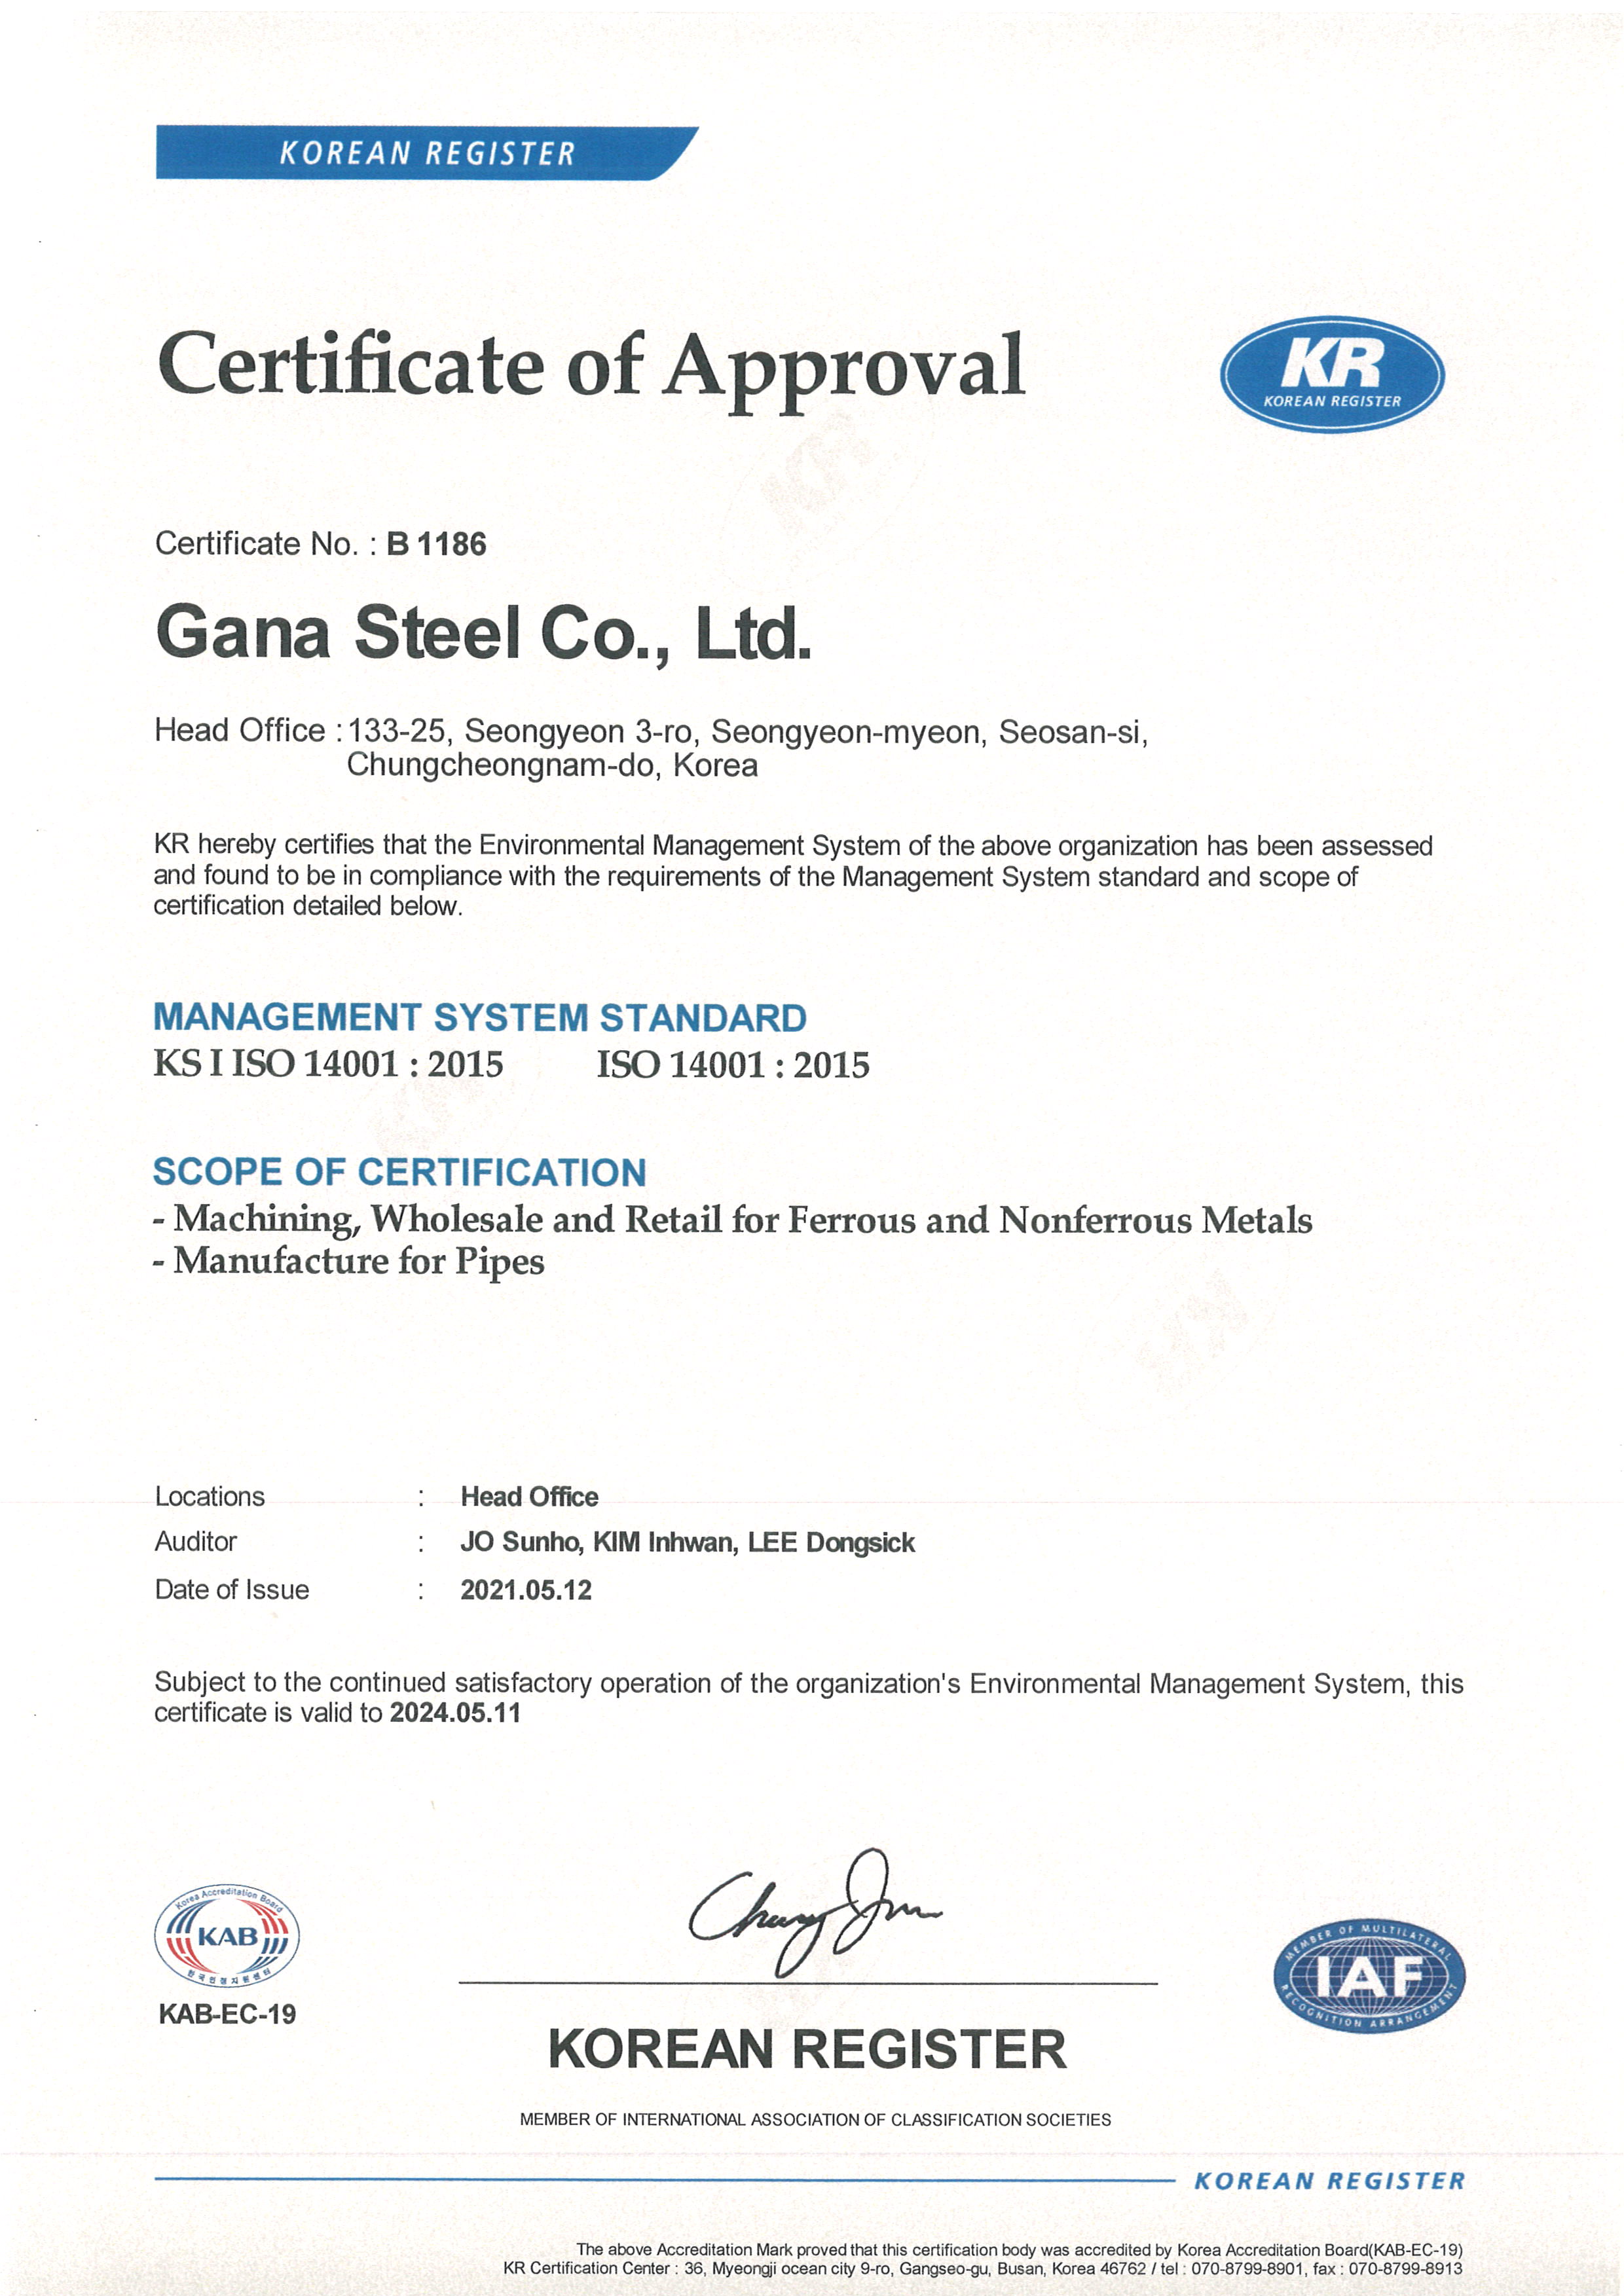 ISO 14001(영문)